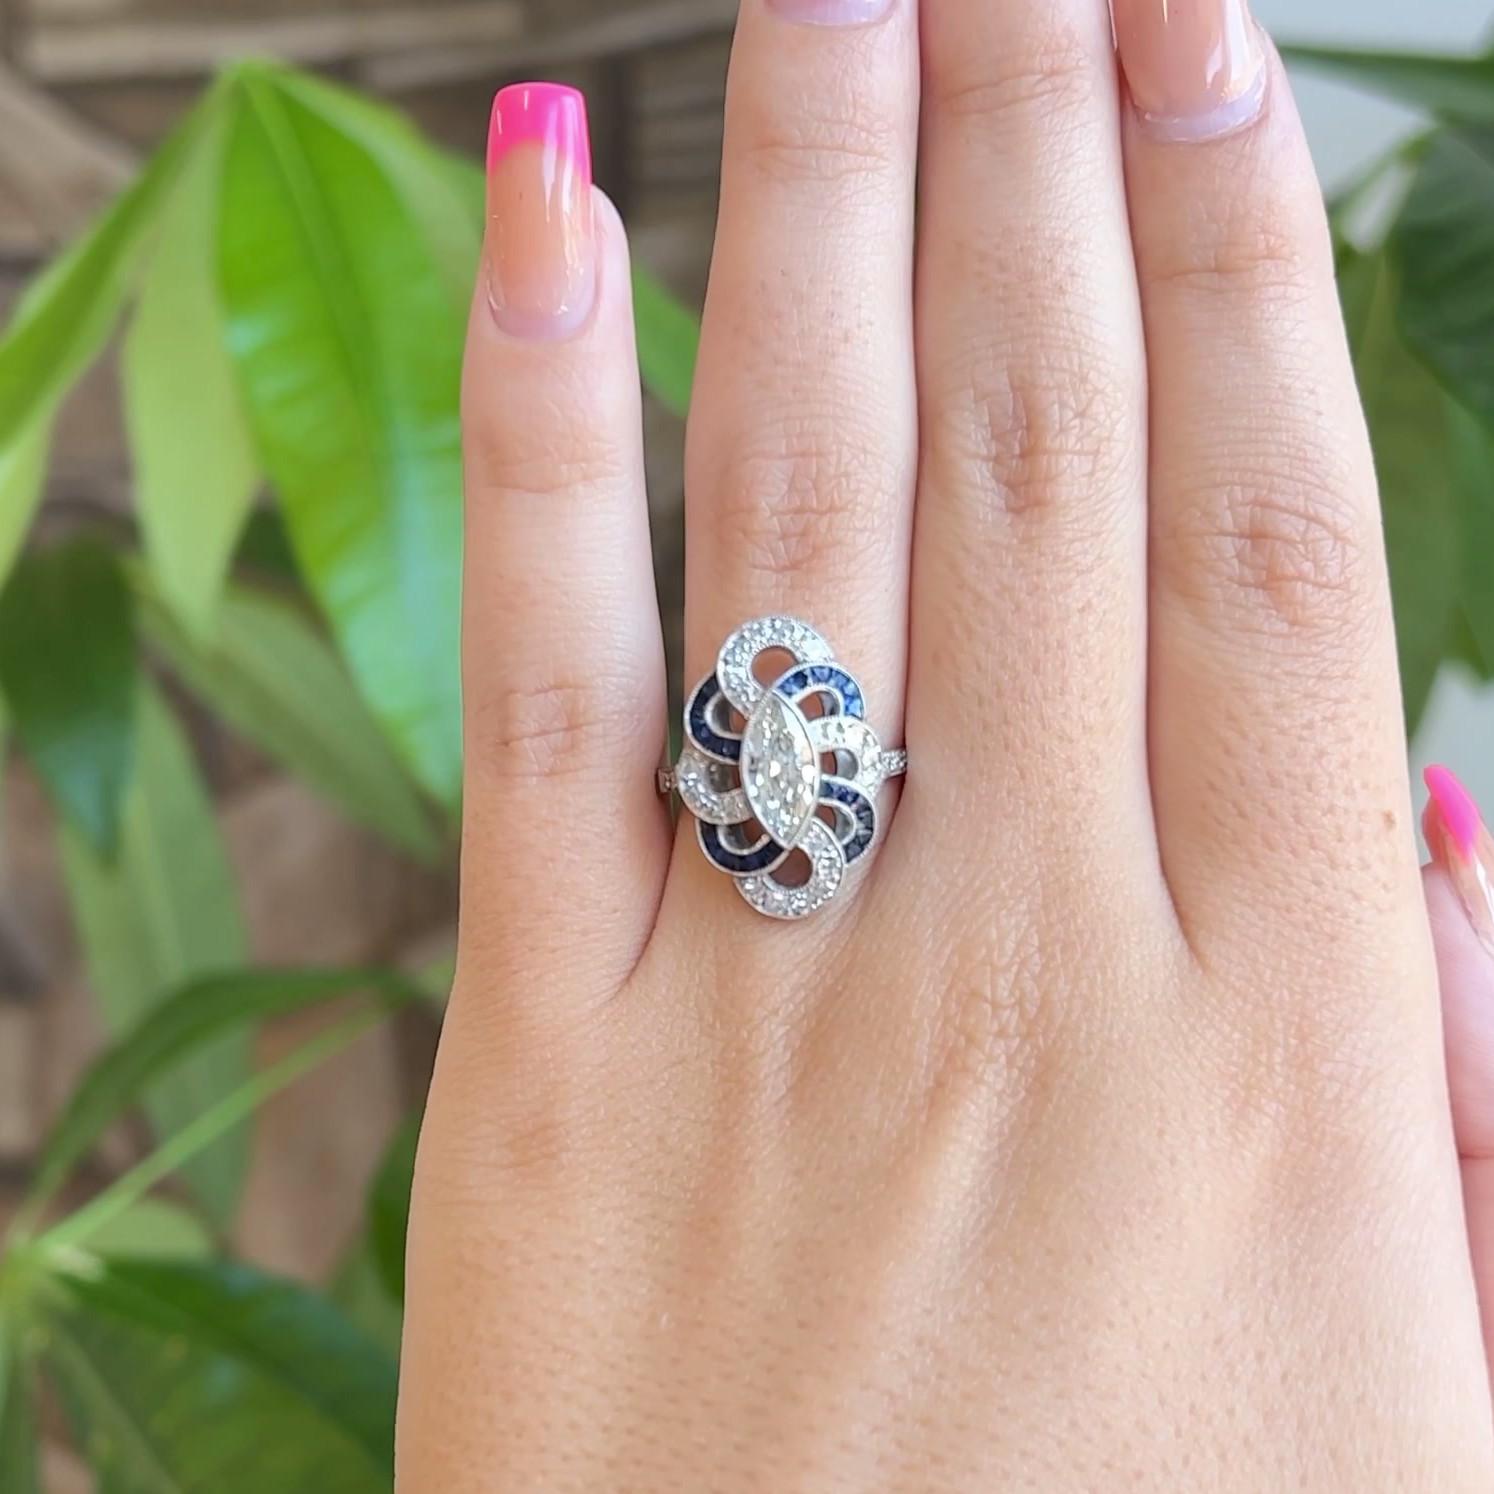 Eine Art Deco inspiriert Marquise Cut Diamond Sapphire Platinum Ring. Mit einem Diamanten im Marquise-Schliff von 0,72 Karat, Farbe I, Reinheit SI. Akzentuiert durch 24 Saphire im Kaliberschliff mit einem Gesamtgewicht von ca. 1,00 Karat und 26